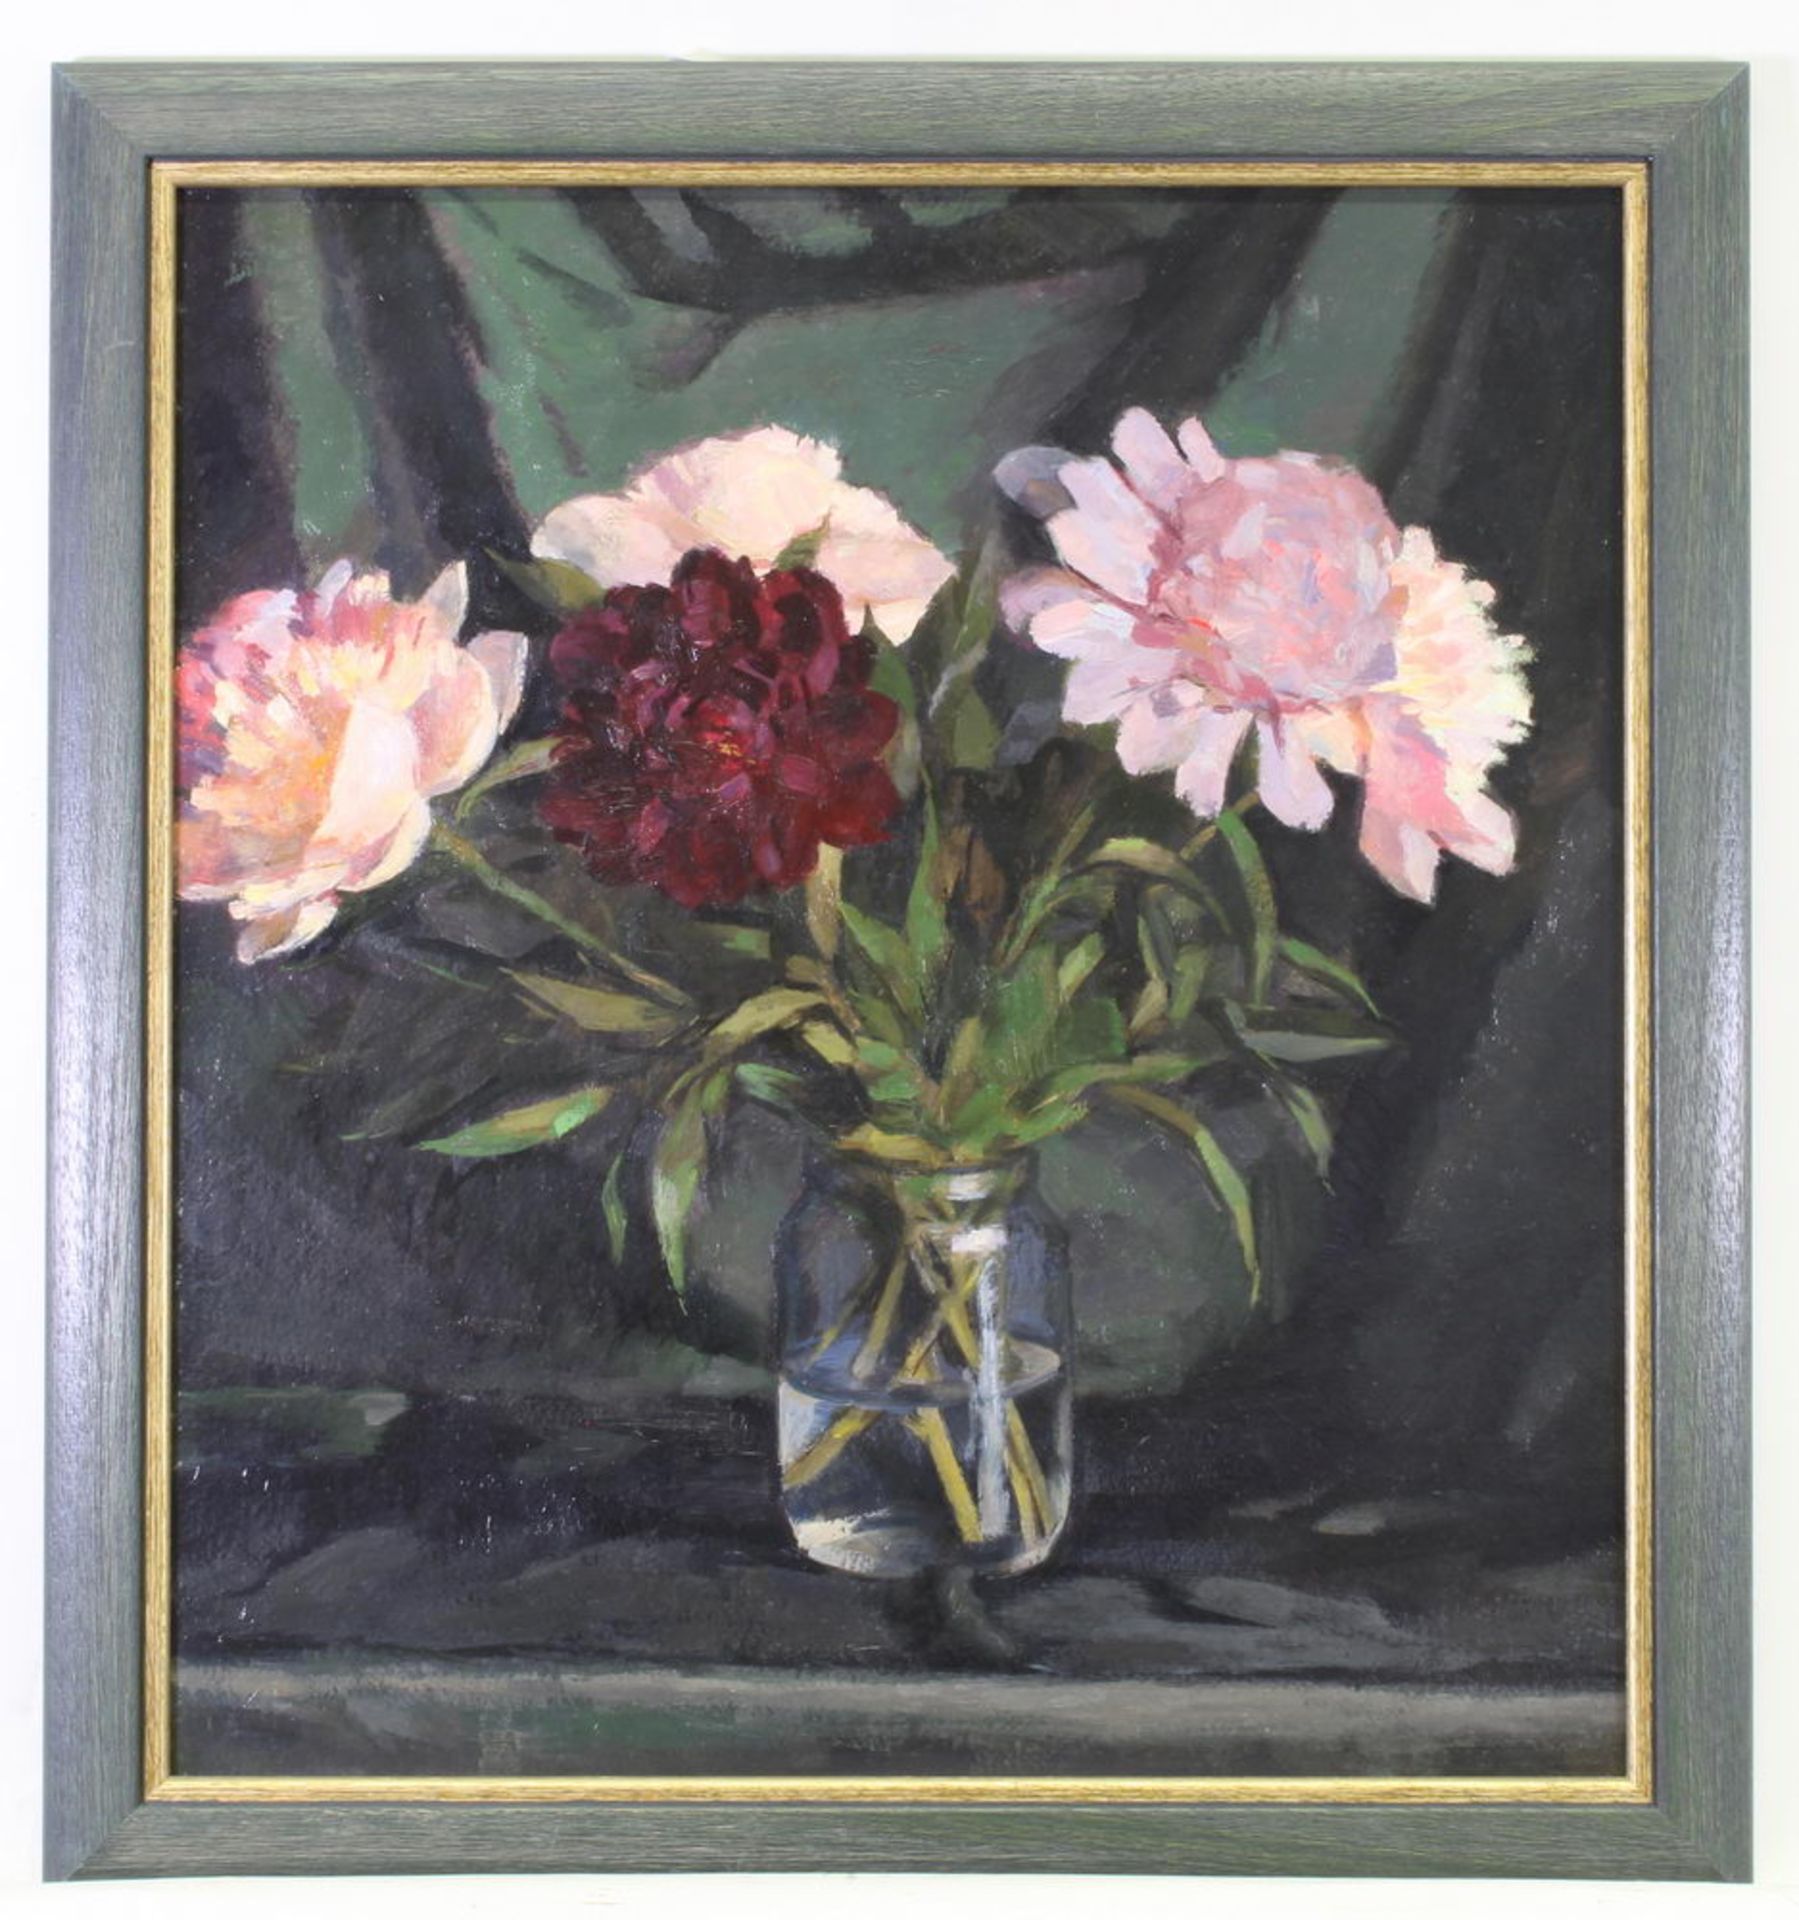 Stilllebenmaler (20. Jh.), "Blumenstillleben", Öl auf Karton, ca. 54 x 50 cm - Bild 2 aus 3